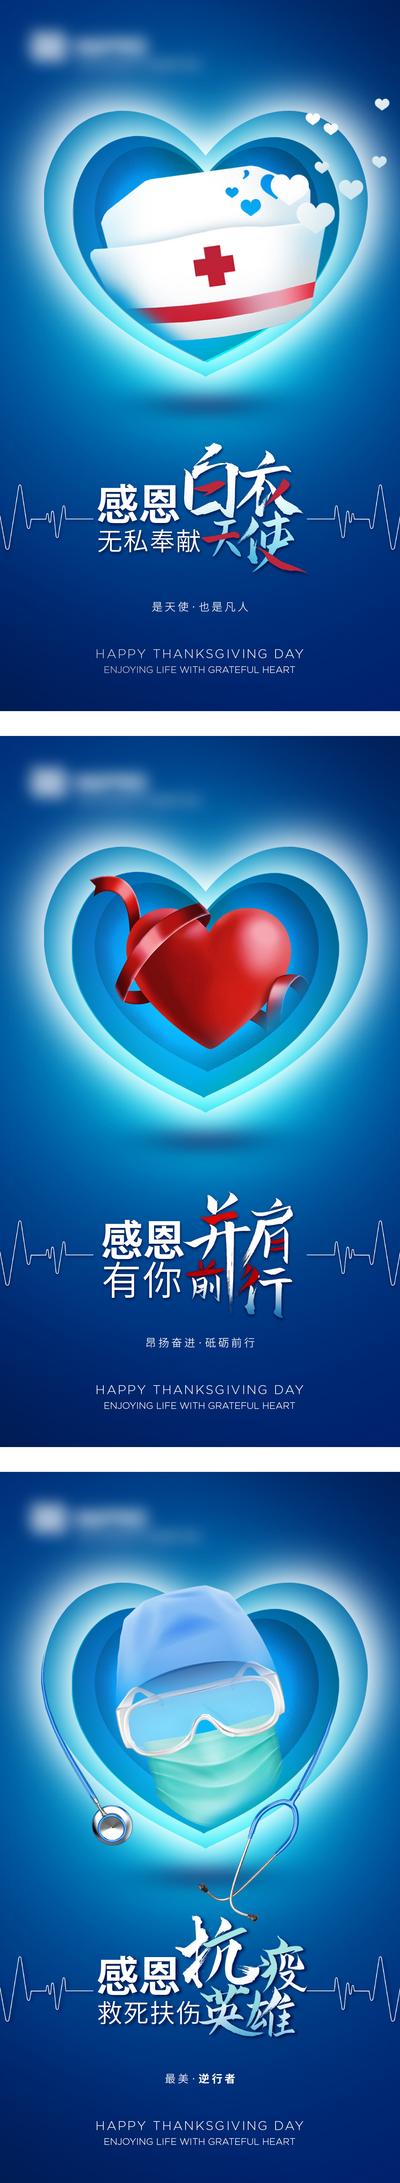 南门网 海报 公历节日 感恩节 医生 护士 爱心 抗疫